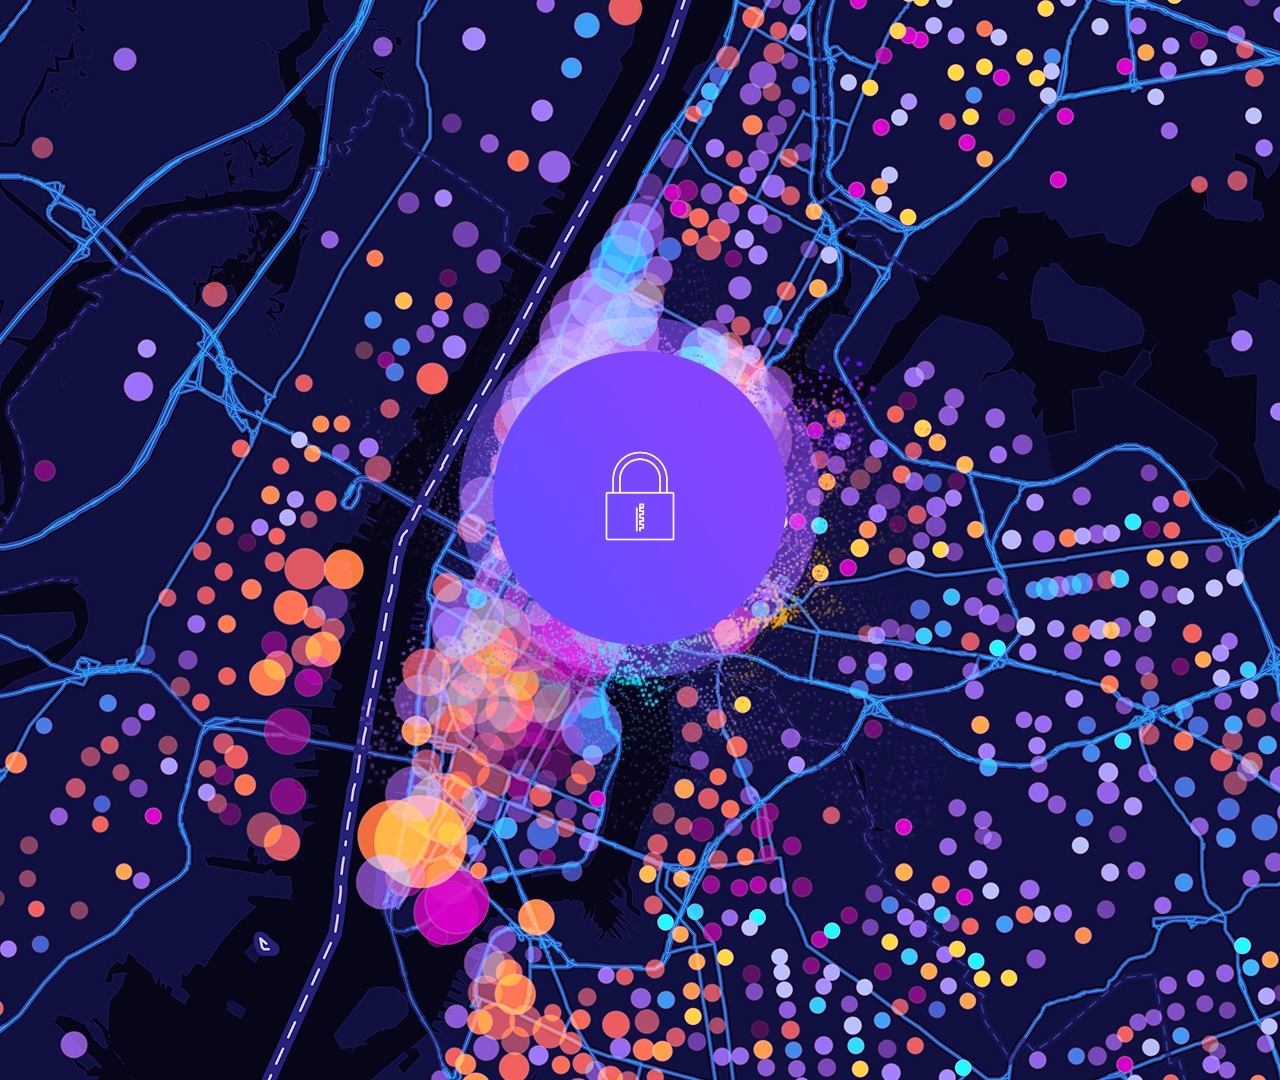 자물쇠 아이콘 및 보라색, 노란색, 분홍색 원형 데이터 포인트가 있는 디지털 도로 맵